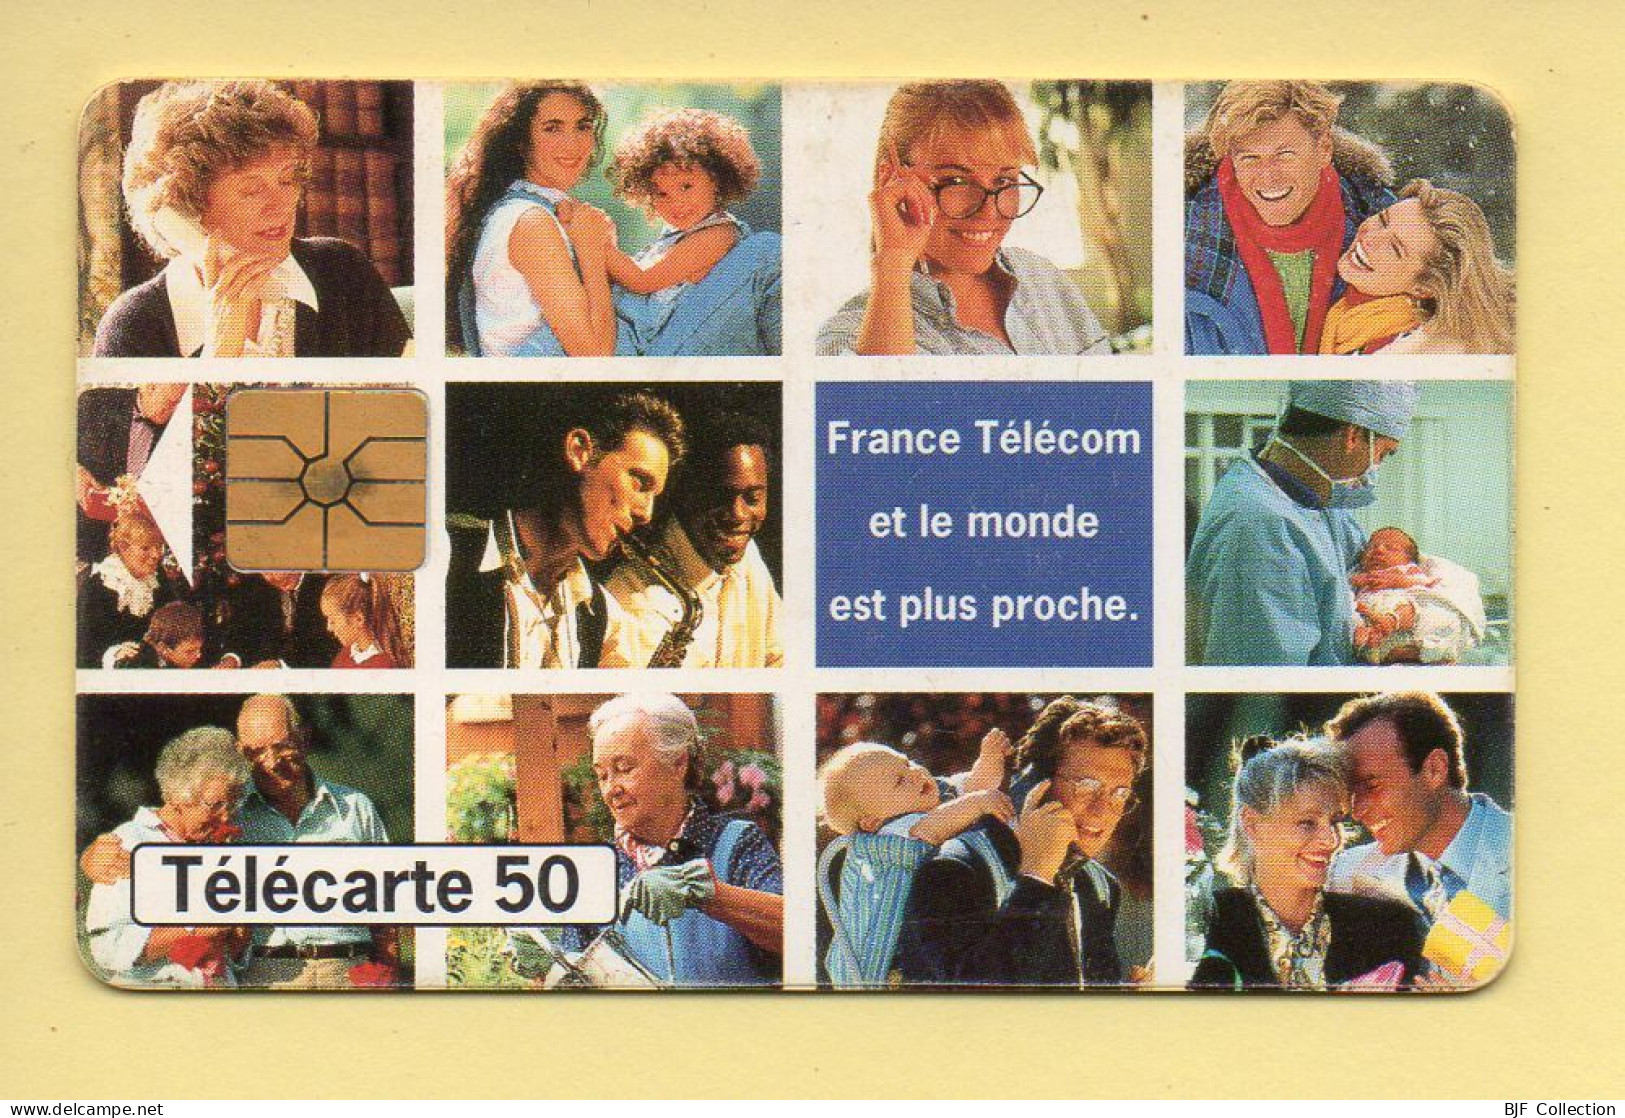 Télécarte 1994 : VOEUX FRANCE TELECOM / 50 Unités / Numéro B52011059/507035942 / 12-94 (voir Puce Et Numéro Au Dos) - 1994